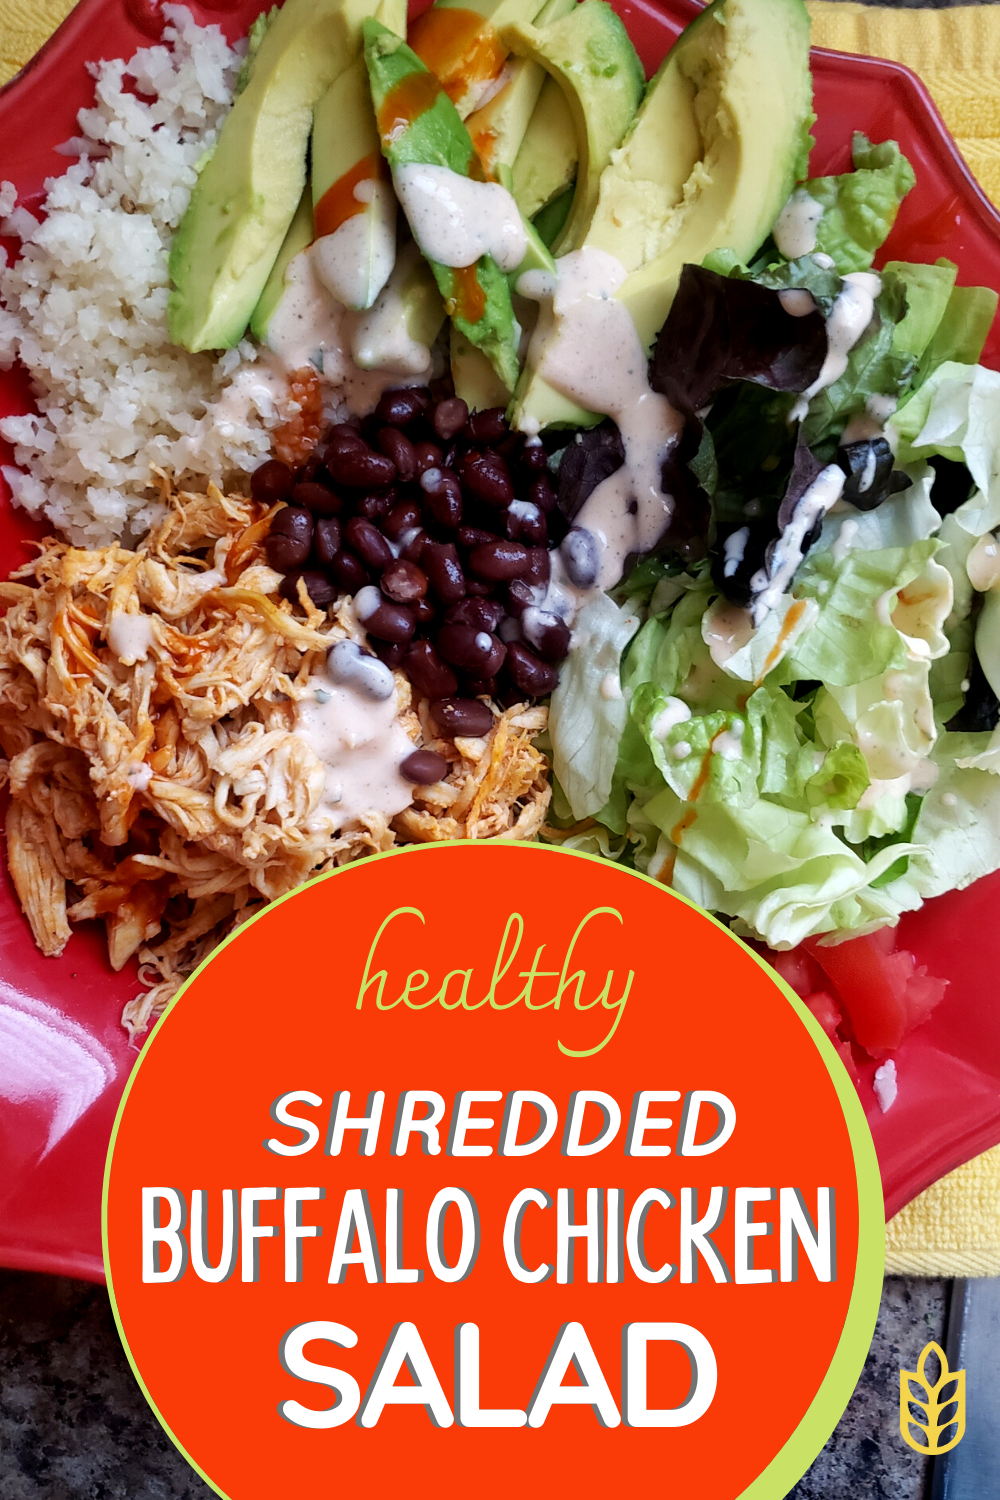 Shredded Buffalo Chicken Salad Image